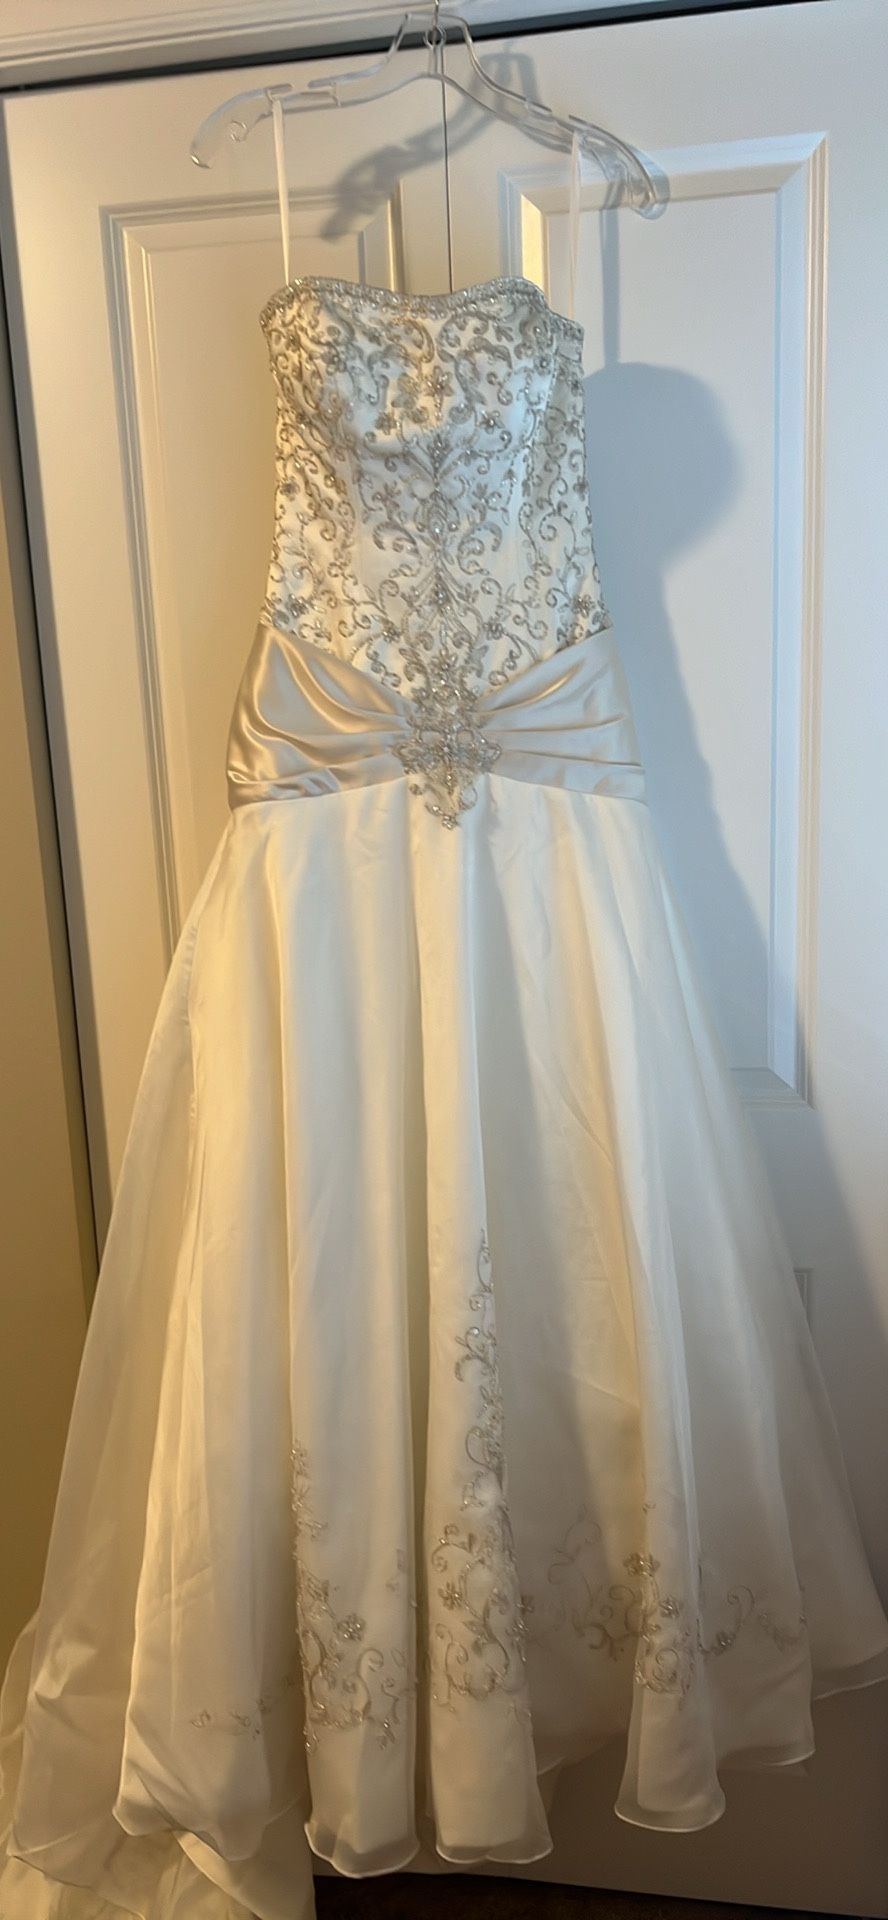 BNWT Wedding Dress. Size 6